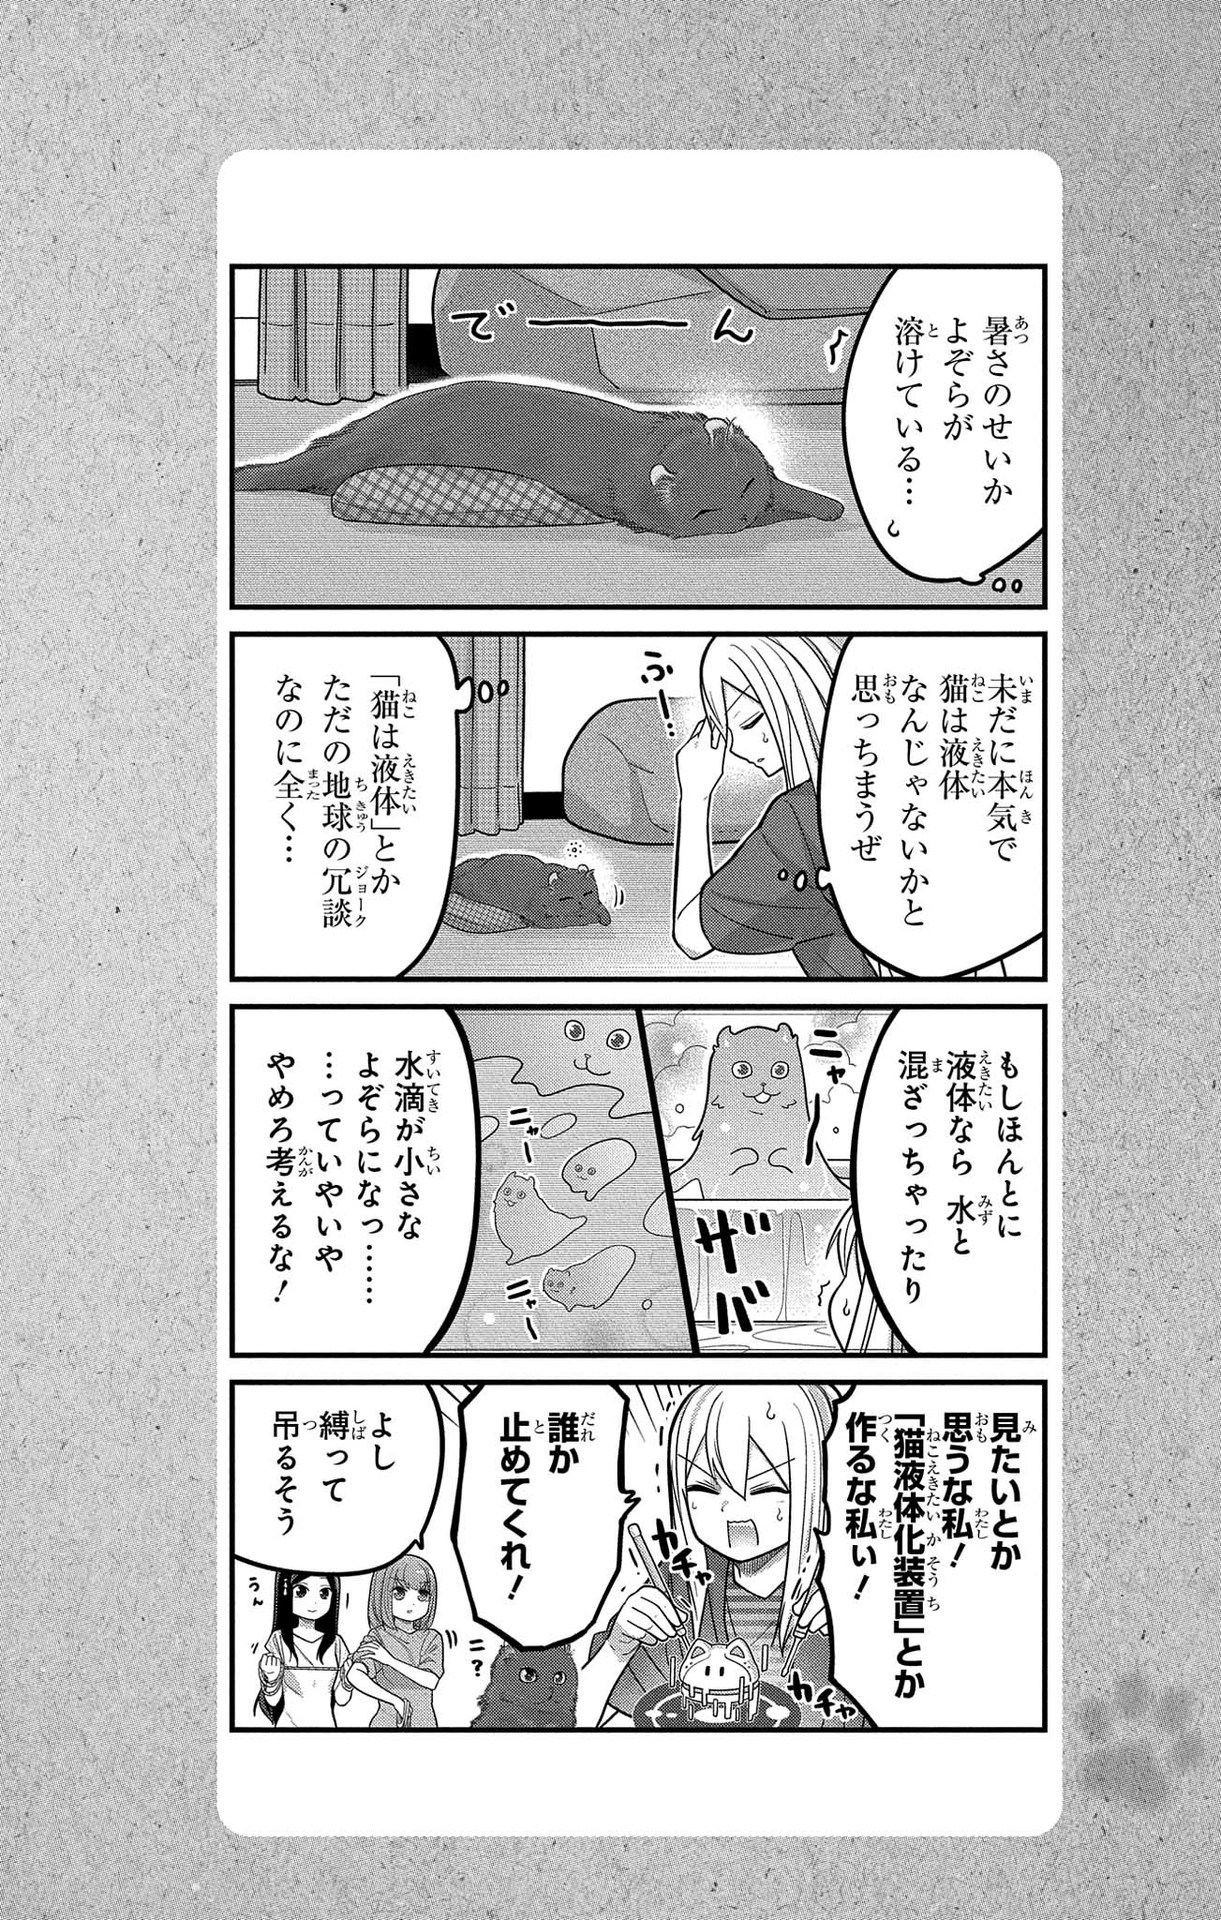 Kawaisugi Crisis - Chapter 93 - Page 16